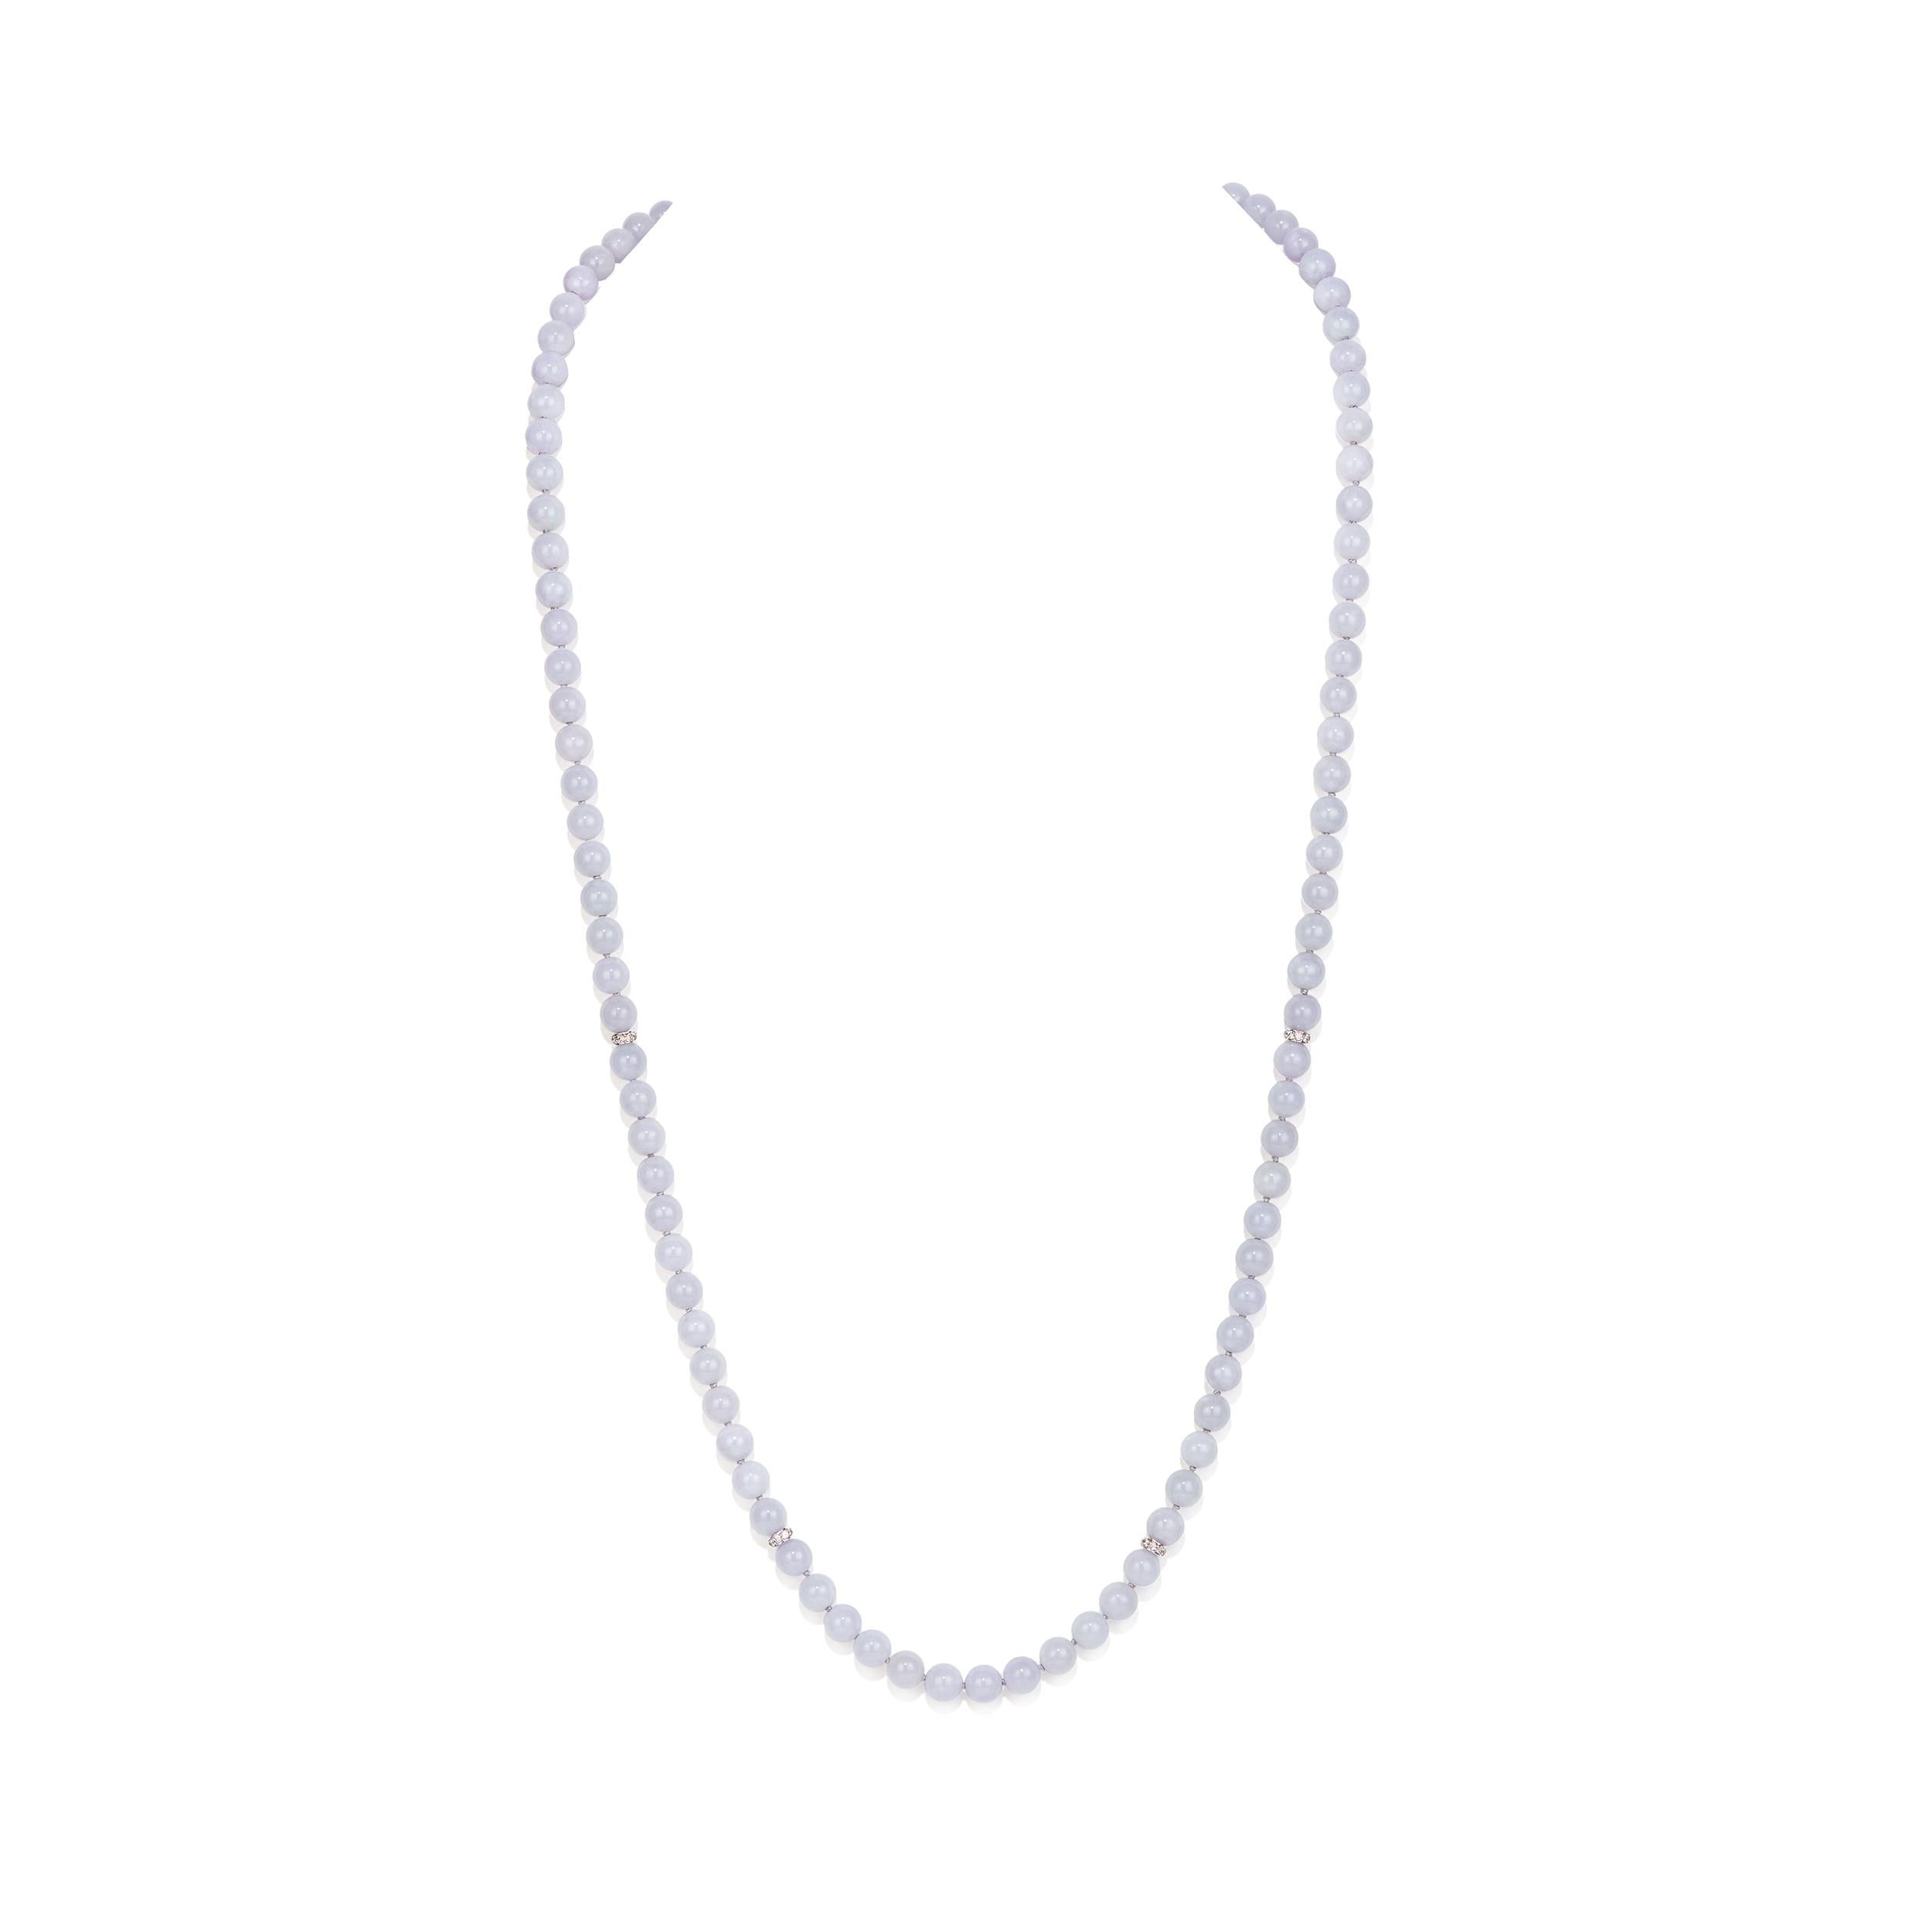 Allgemeine Beschreibung:

6.5-7 mm Lavendel Jade Runde Perlen
    - •Gesamtzahl der Perlen von 104

Diamant Eternity Rondelle Abstandshalter
     - •5.5 mm 
     - •0.16 Karat 
     - •18 Karat Weißgold 

Gesamtlänge: 32 Zoll
Gewicht: 72 Gramm

GIA